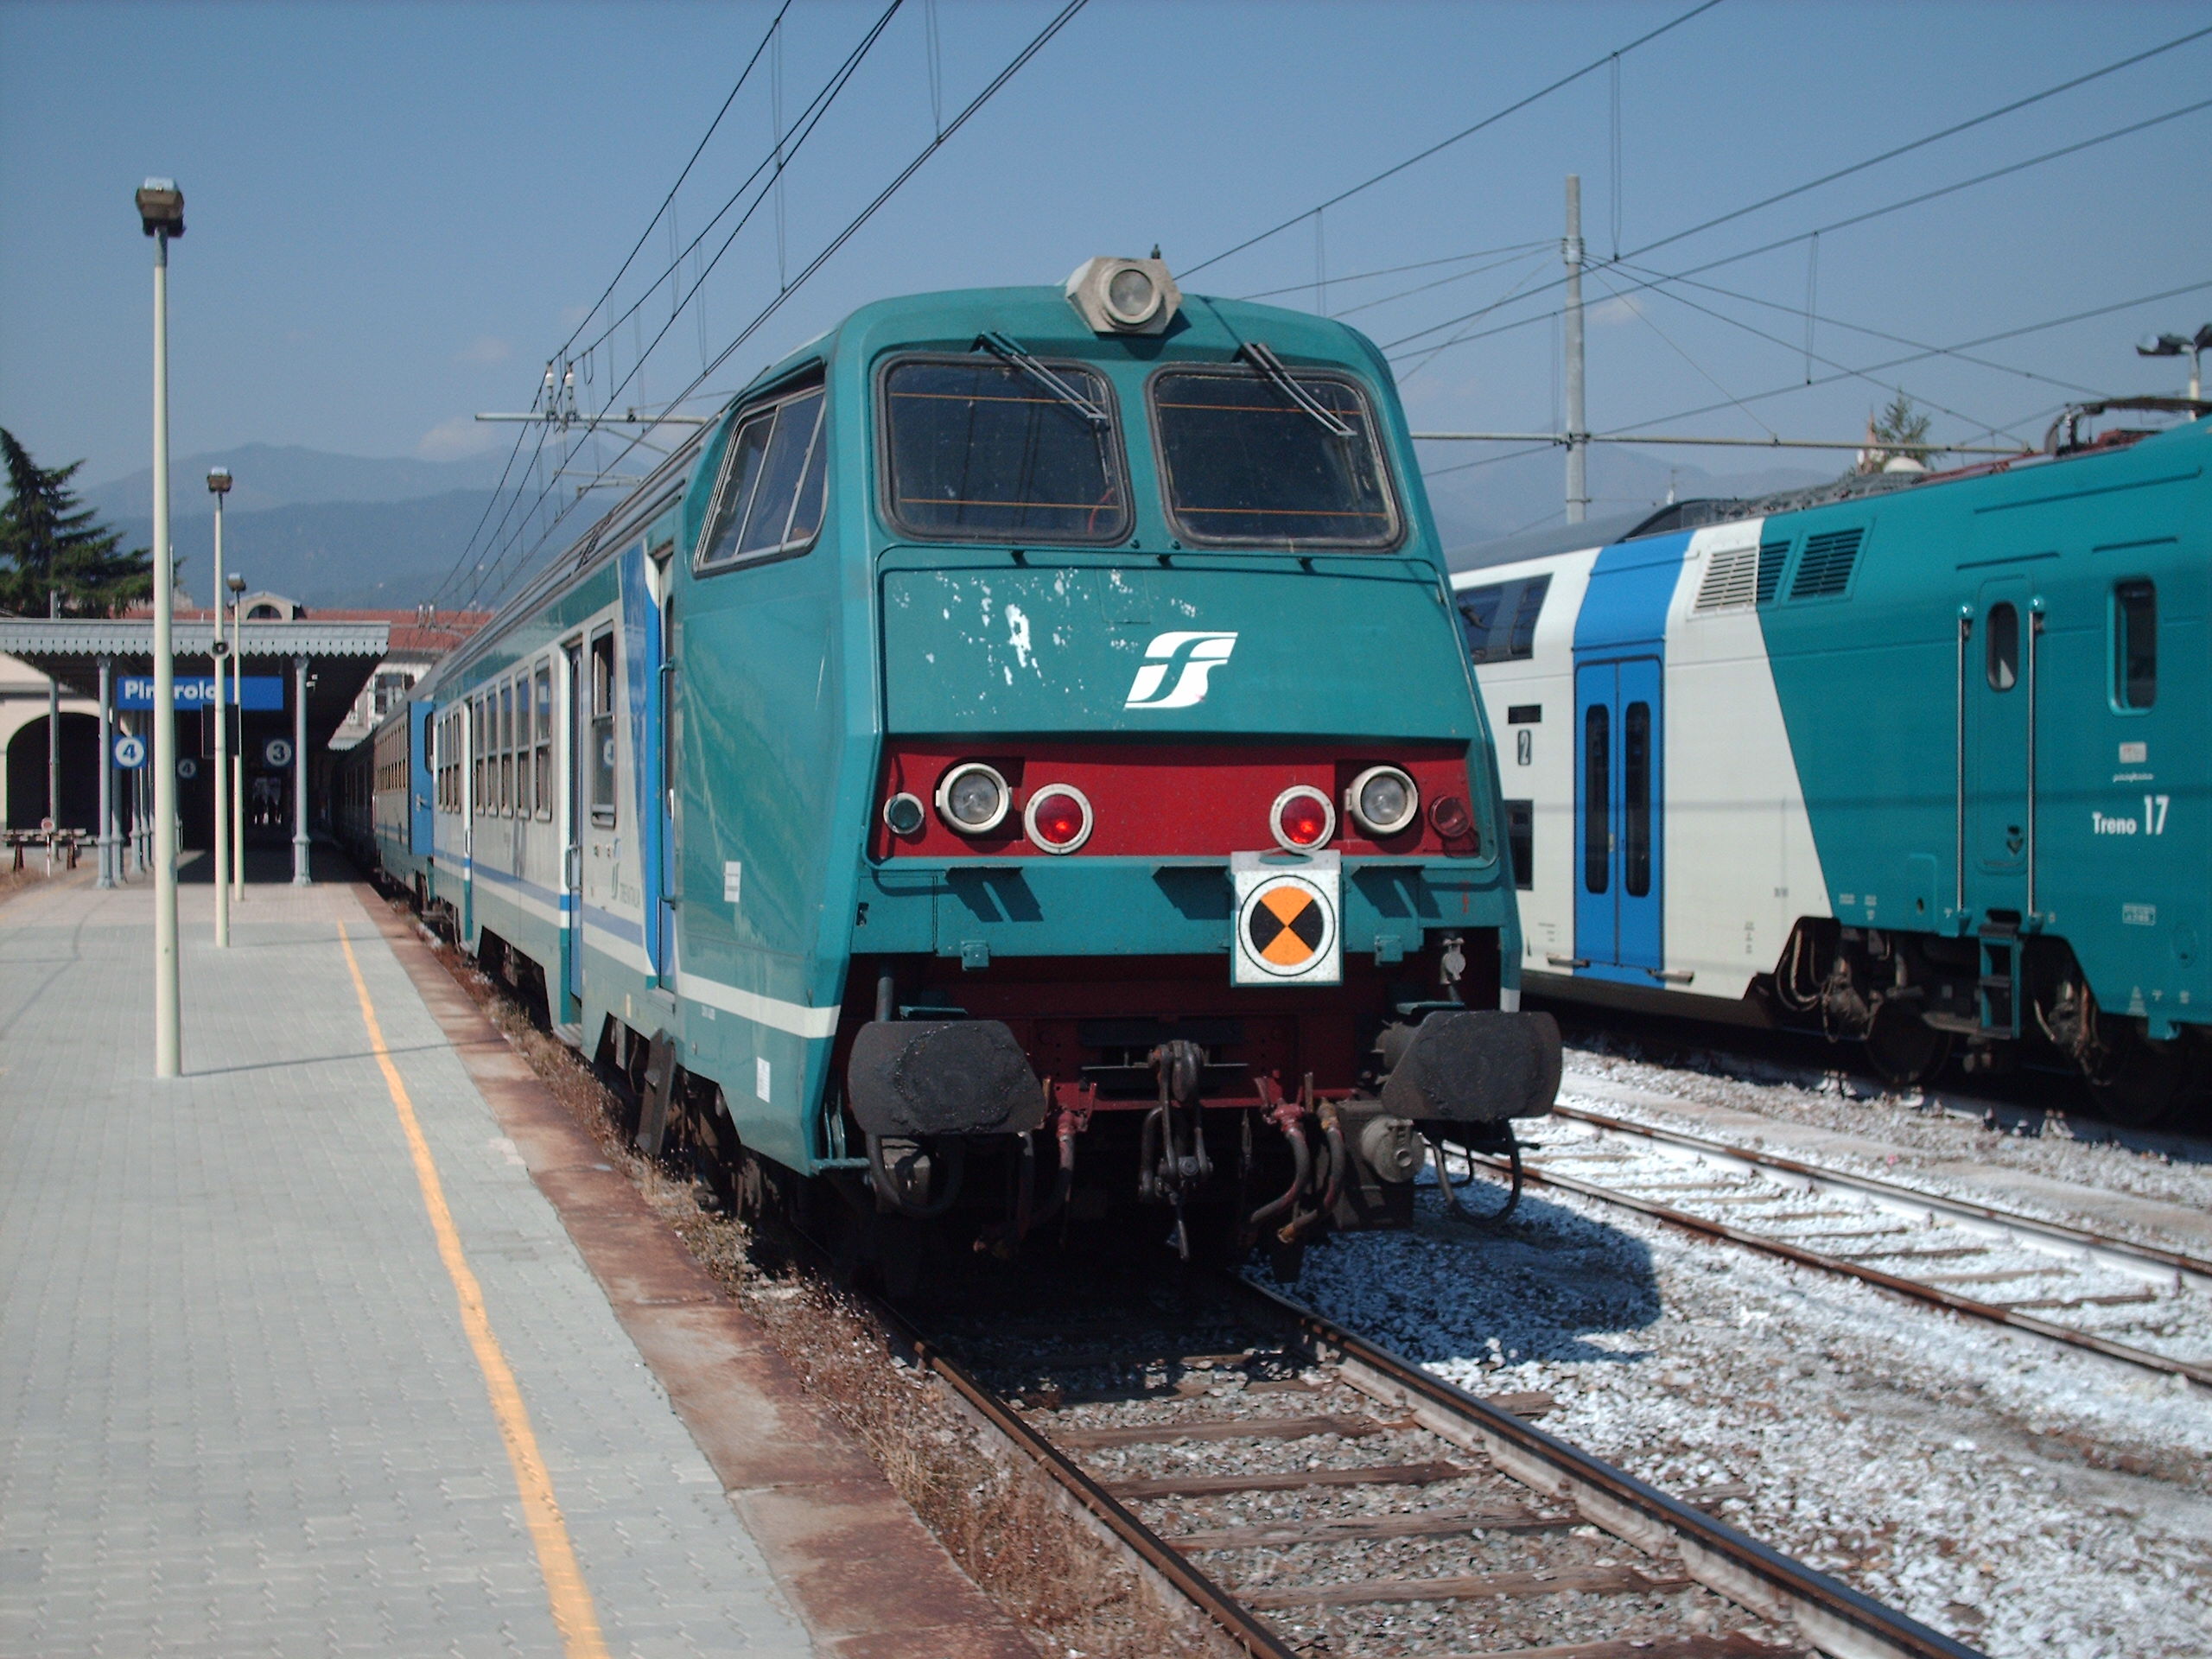 Treno Olbia-Cagliari: pendolari stipati come bestie